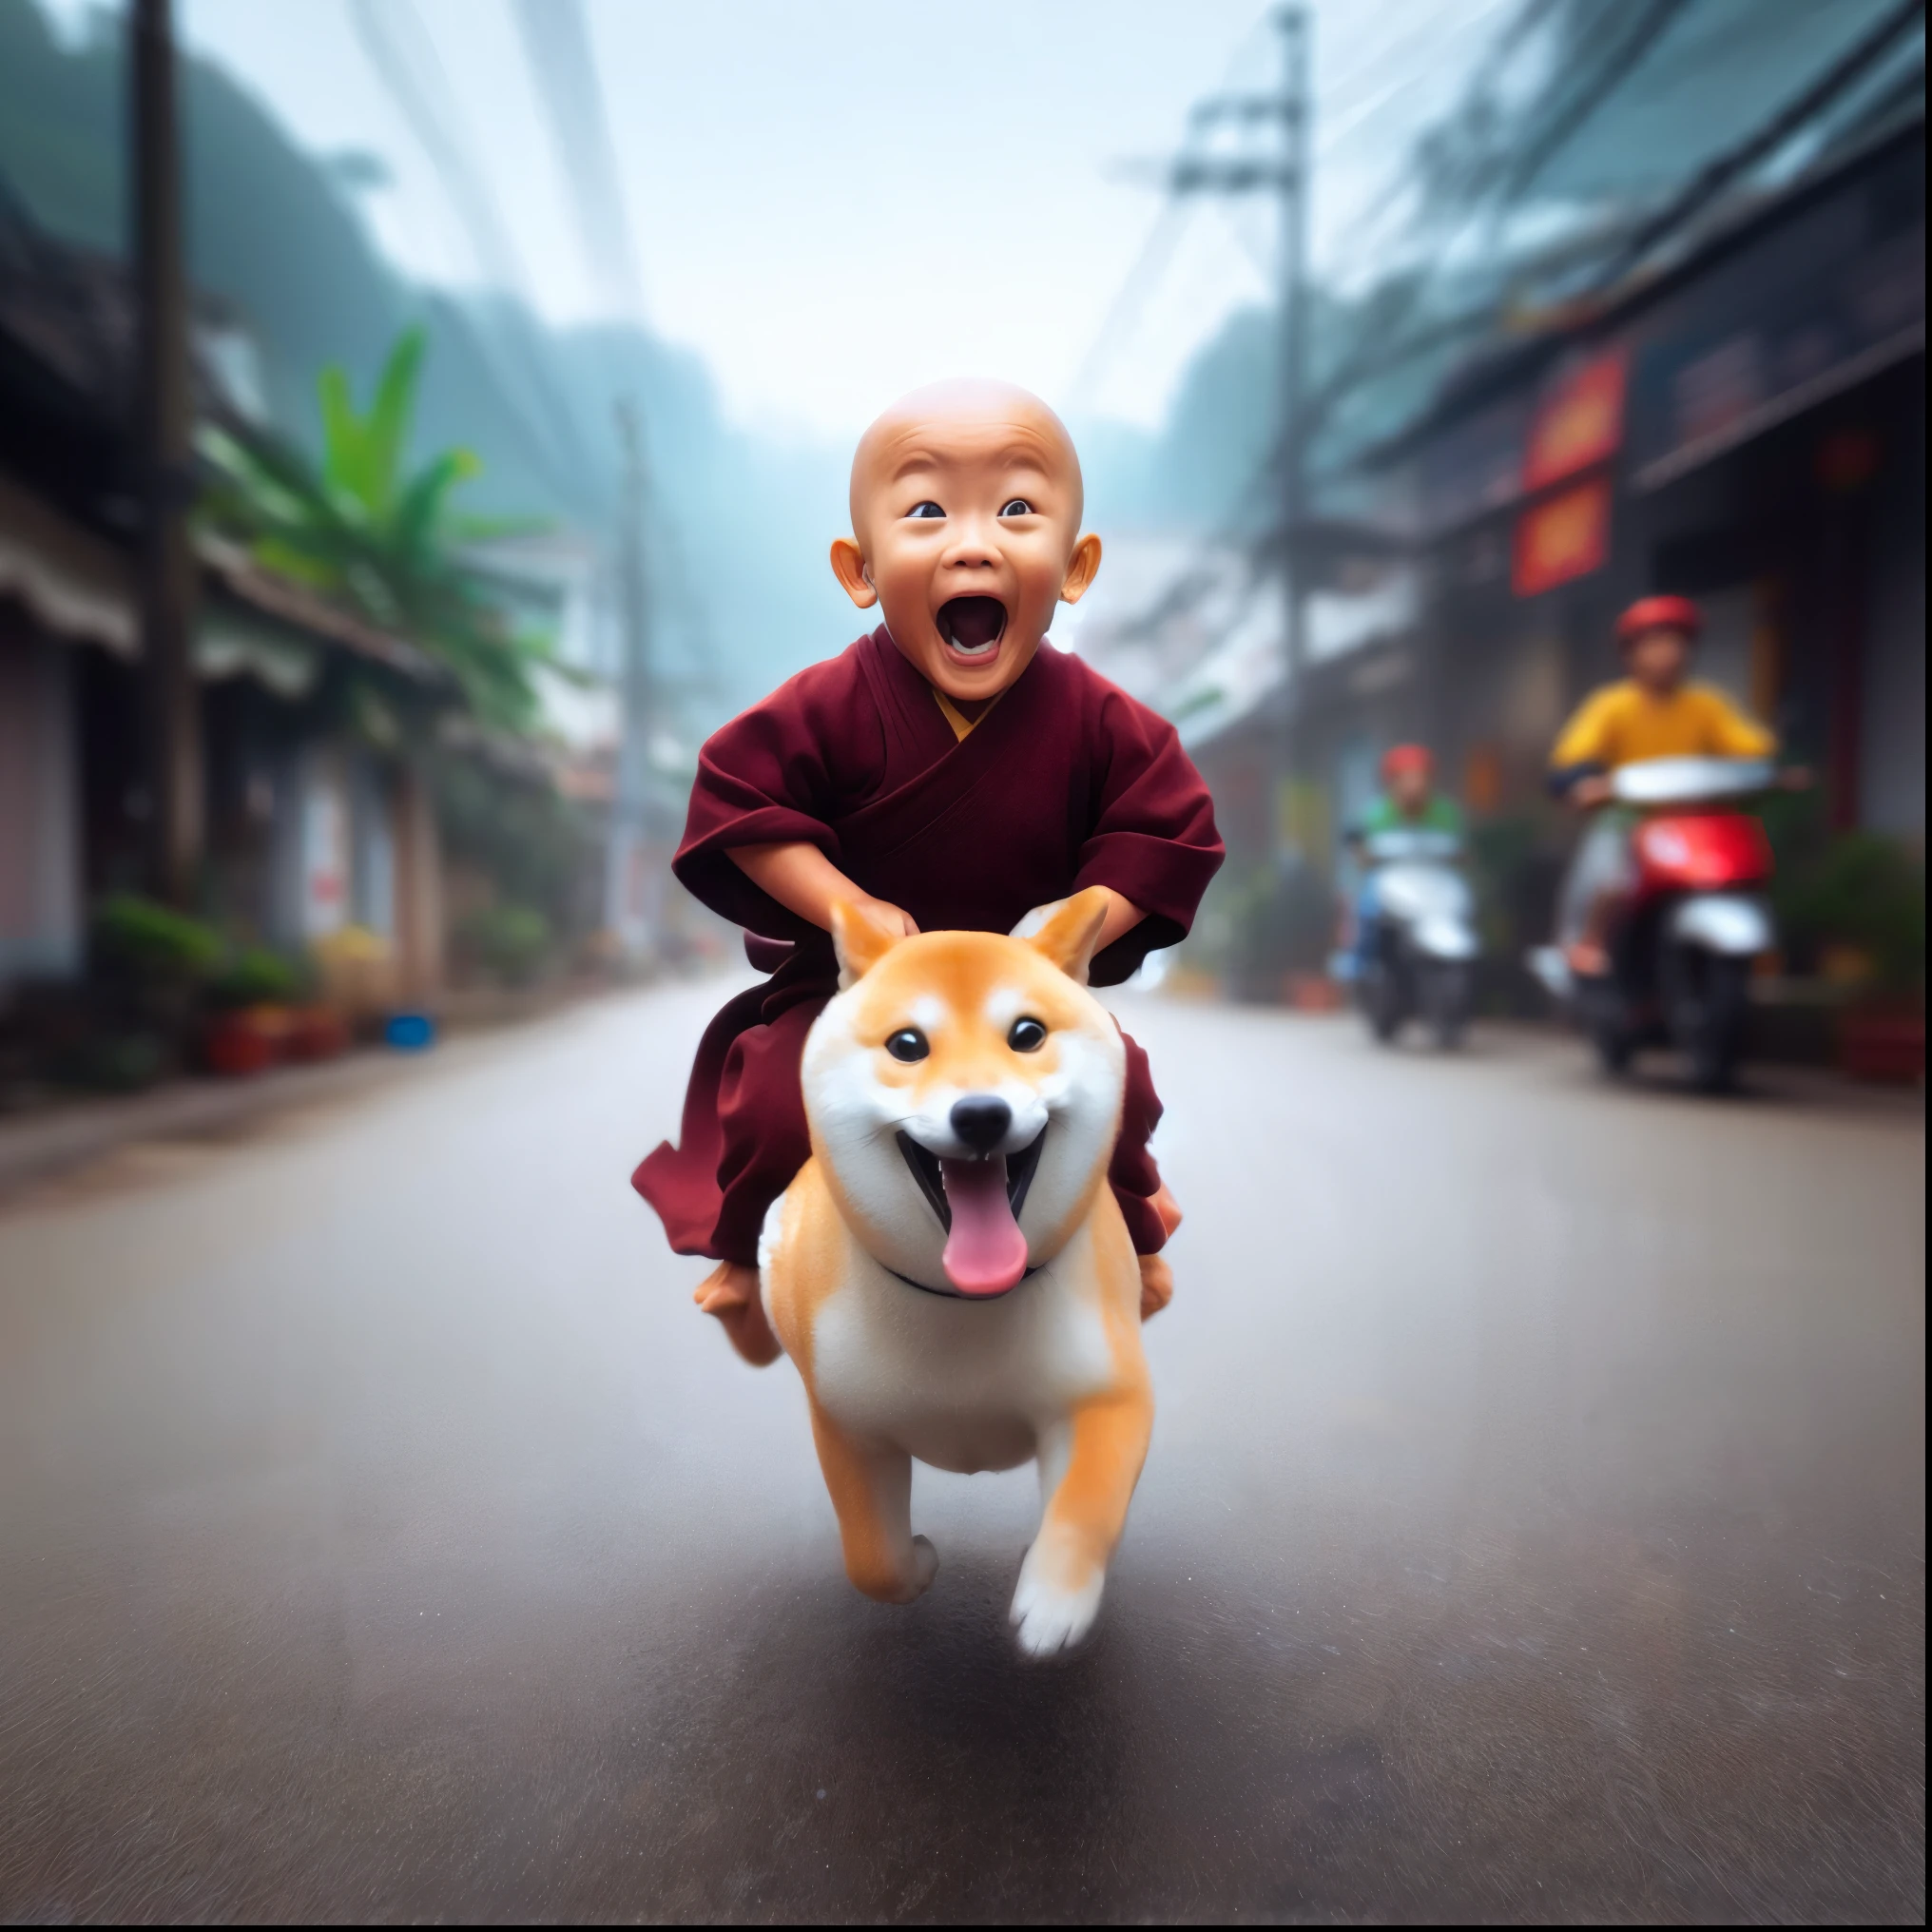 arafed image of a モンク riding a dog on a street, 仏教徒, 犬は神, 2 1 st century モンク, 驚くべき深さ, ドージェ, 仏教, 素晴らしい, 活発な小型犬と一緒に, グウェイズ風のアートワーク, 愛らしいデジタル絵画, モンク, 彼はとても幸せです, 純粋な喜び, 司馬江漢に触発された